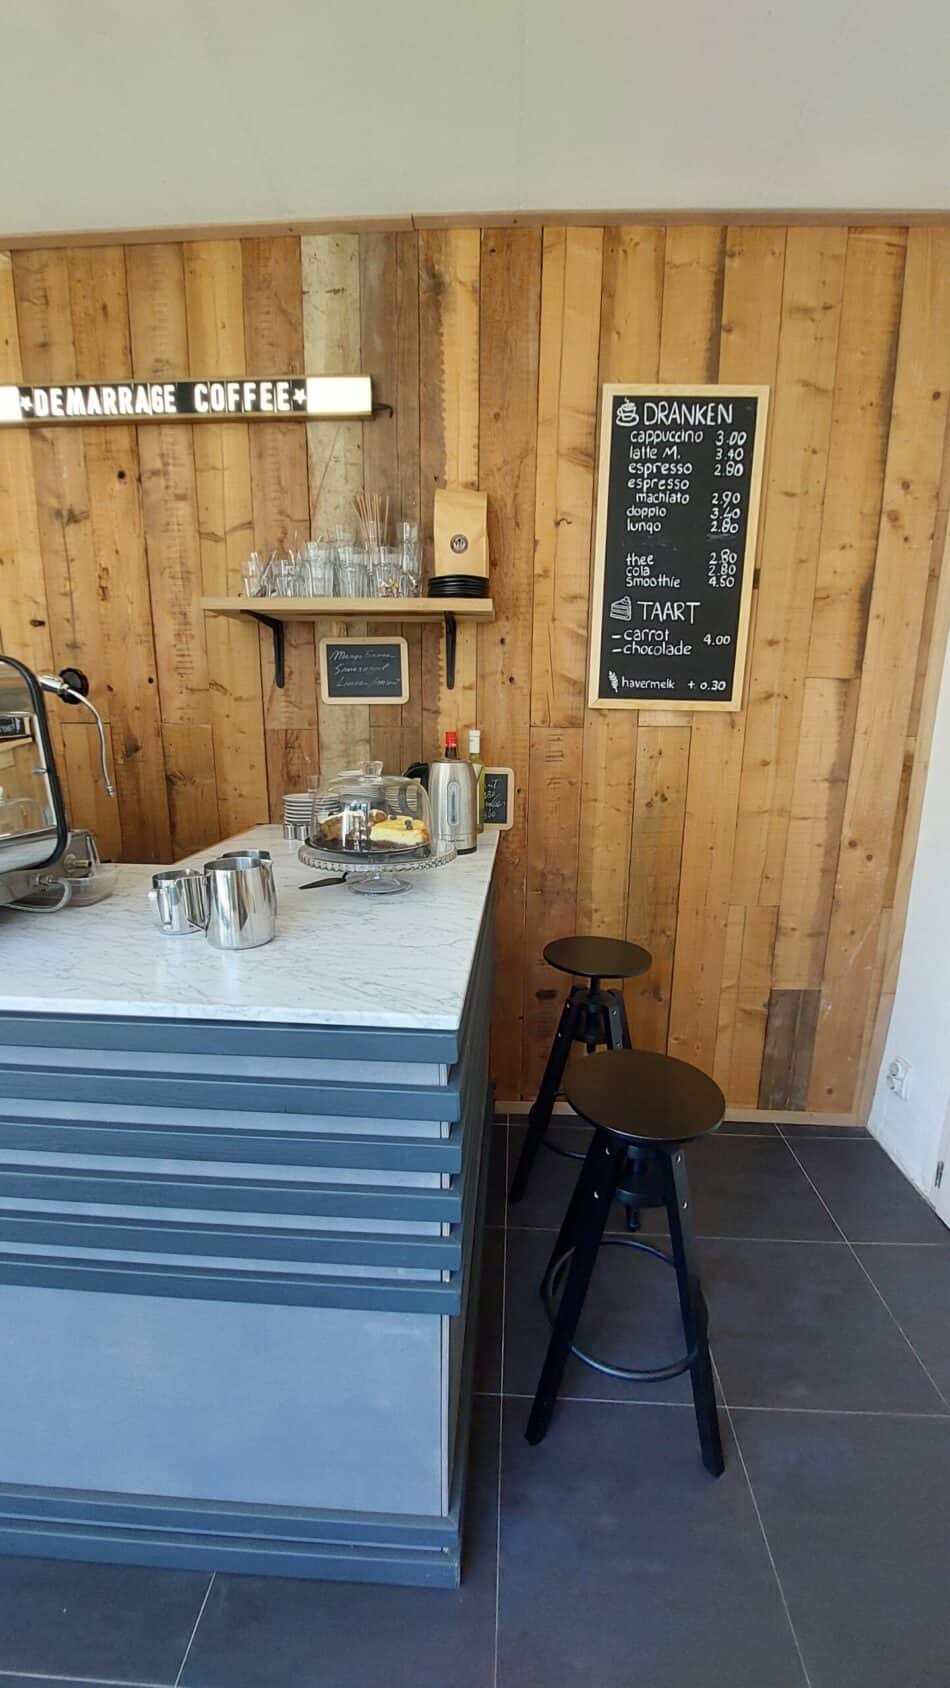 Demarrage Coffee in Slenaken - wielercafes.nl